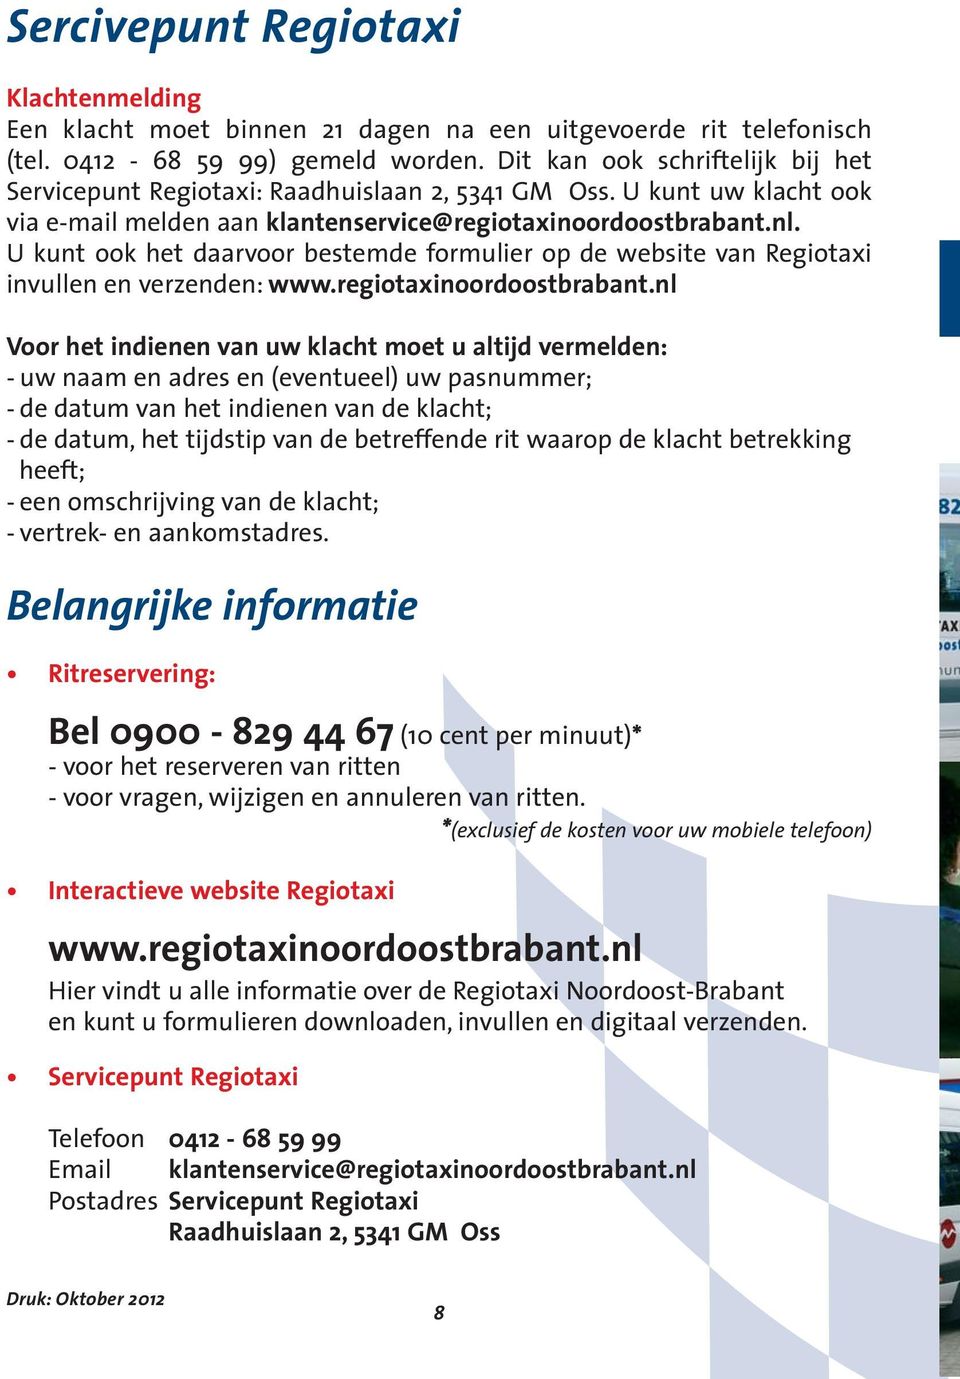 U kunt ook het daarvoor bestemde formulier op de website van Regiotaxi invullen en verzenden: www.regiotaxinoordoostbrabant.